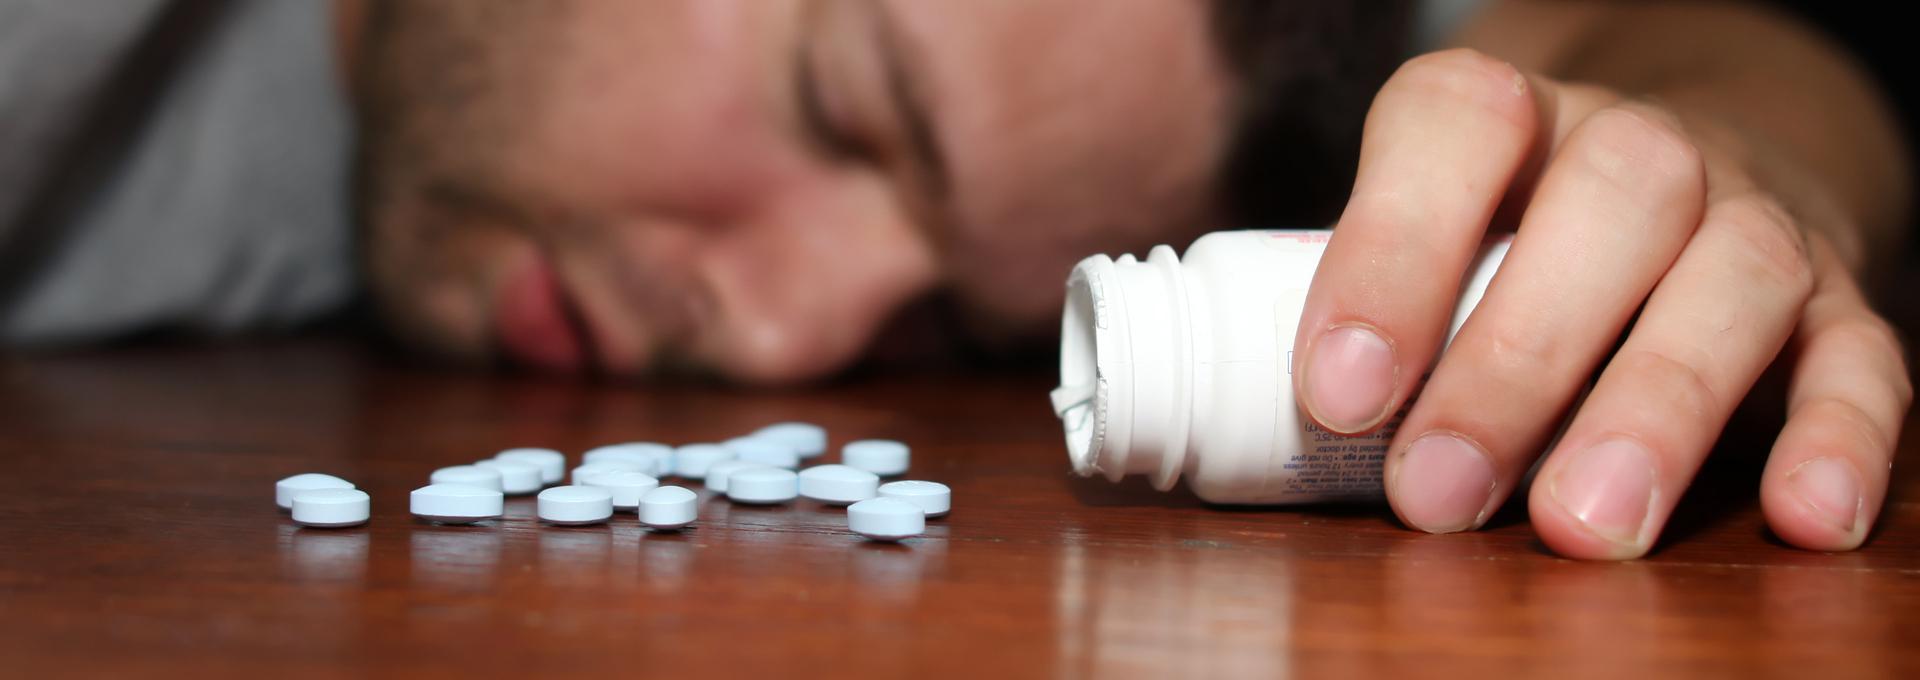 Пить без последствий. Снотворное. Отравление таблетками. Передозировка таблетками. Седативными и снотворными средствами:.